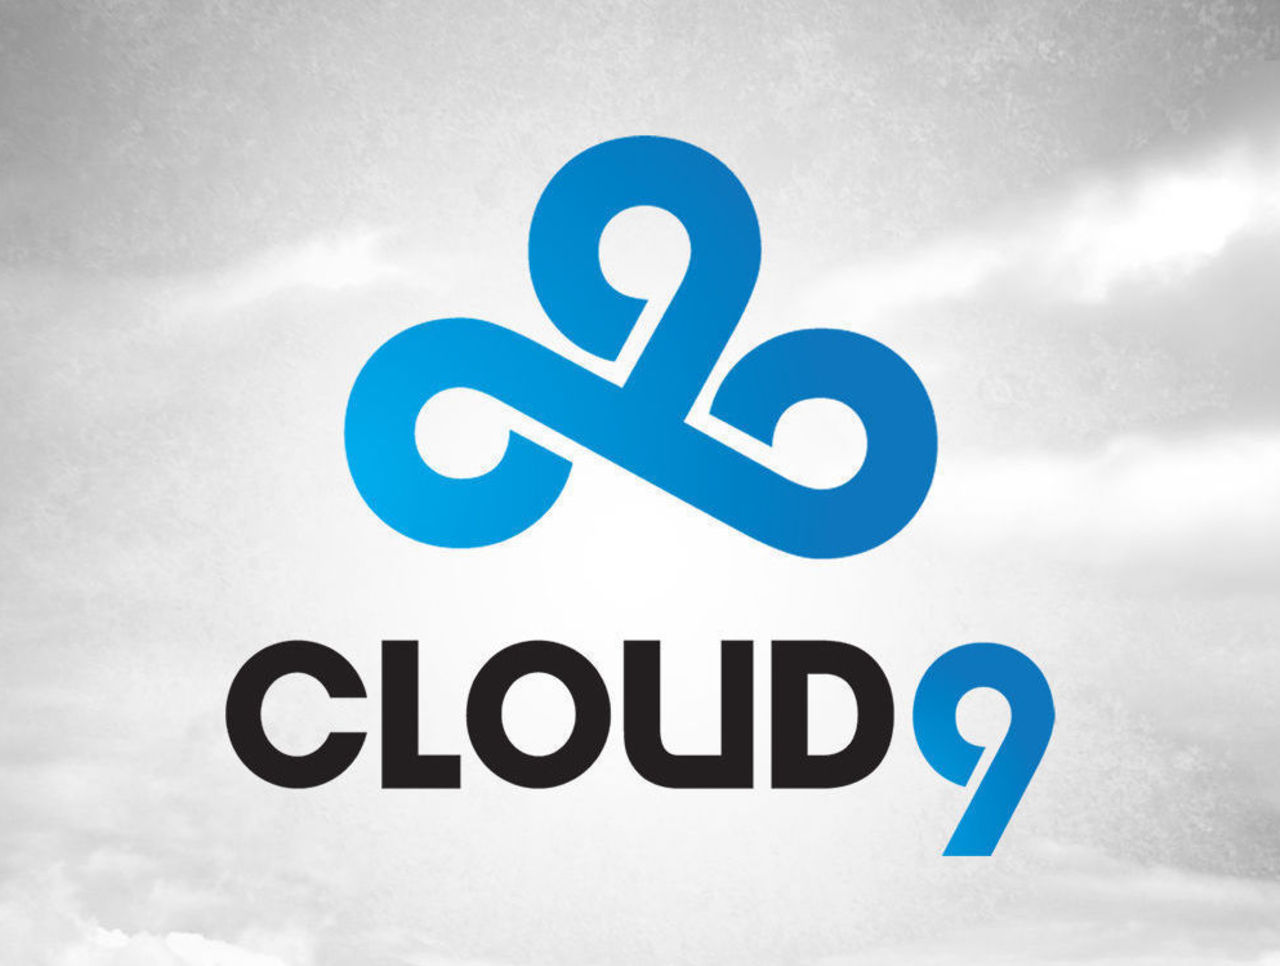 Cloud9 recibe $25 millones en financiamiento por parte de grandes empresas